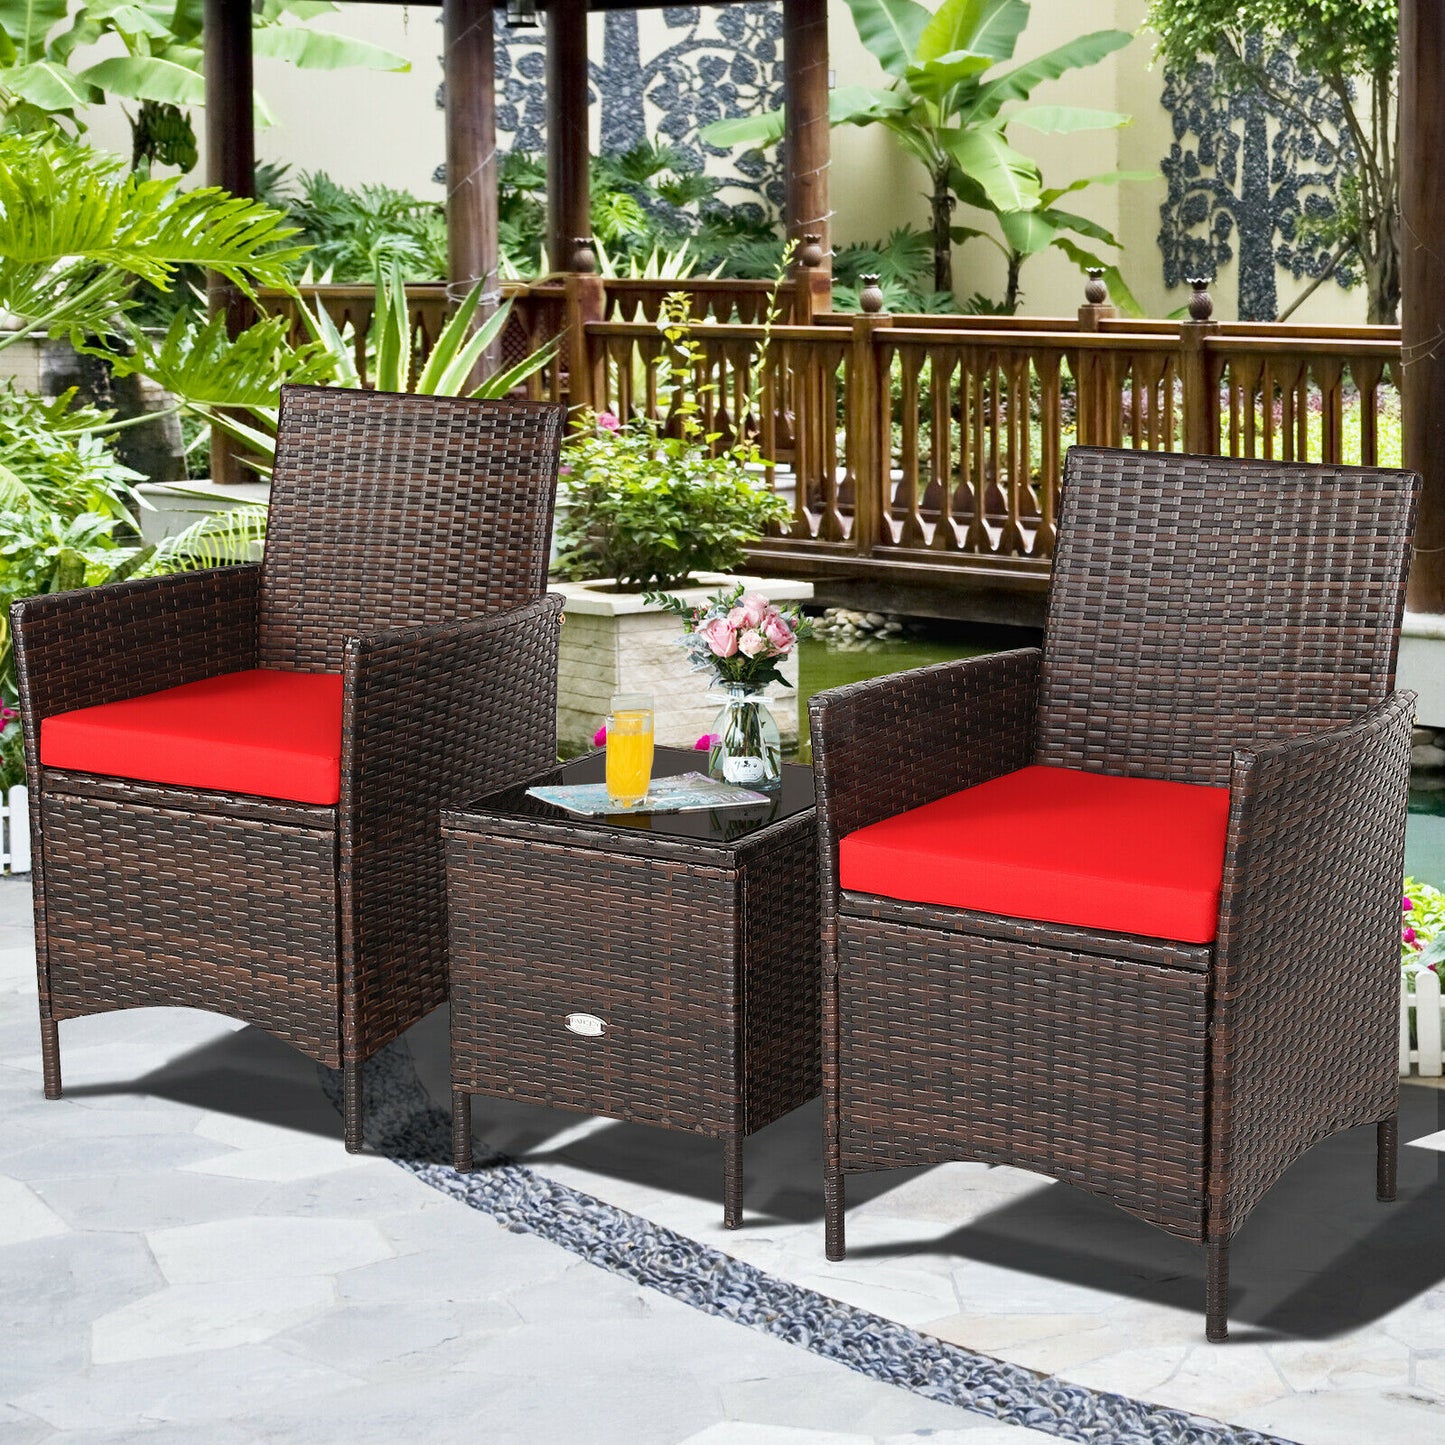 Bound Original Patio 3 Piece Premium Carbon Fibre Furniture Set